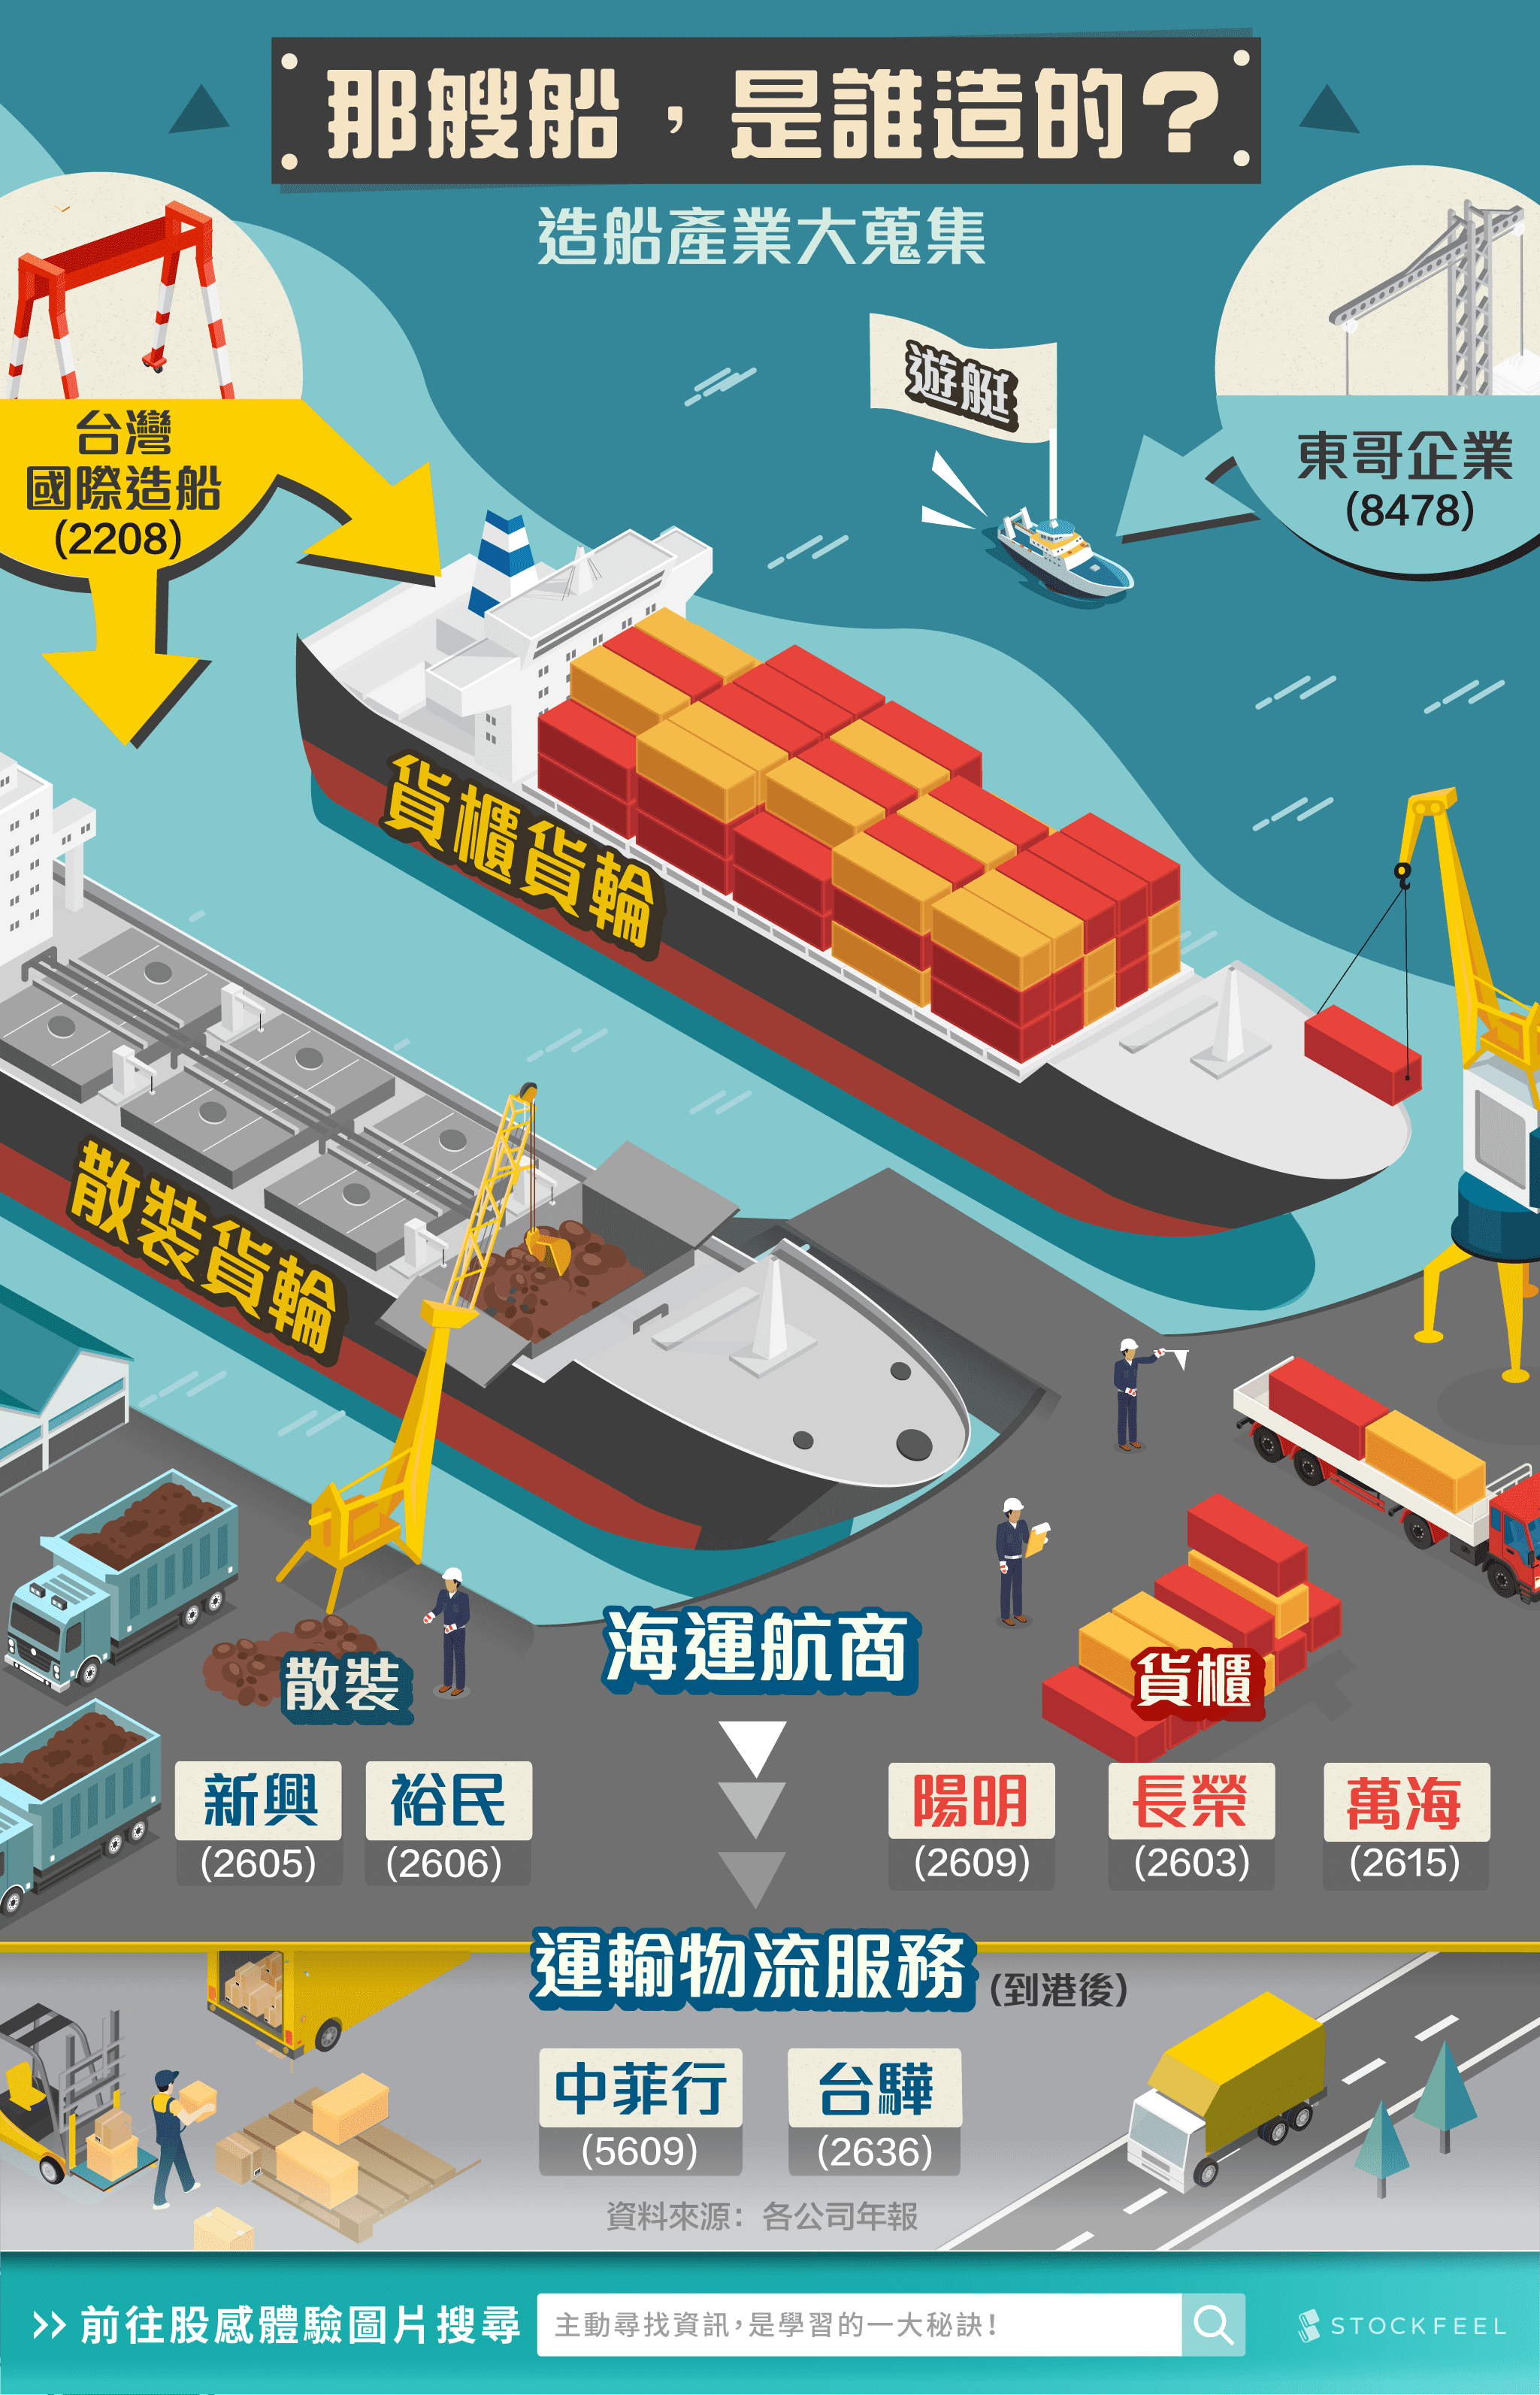 台灣航運股（航運股票、航運概念股）包括：台船(2208)、東哥(8478)、長榮(2603)、陽明(2609)、萬海(2615)、新興、裕民、中菲行、台驊等。